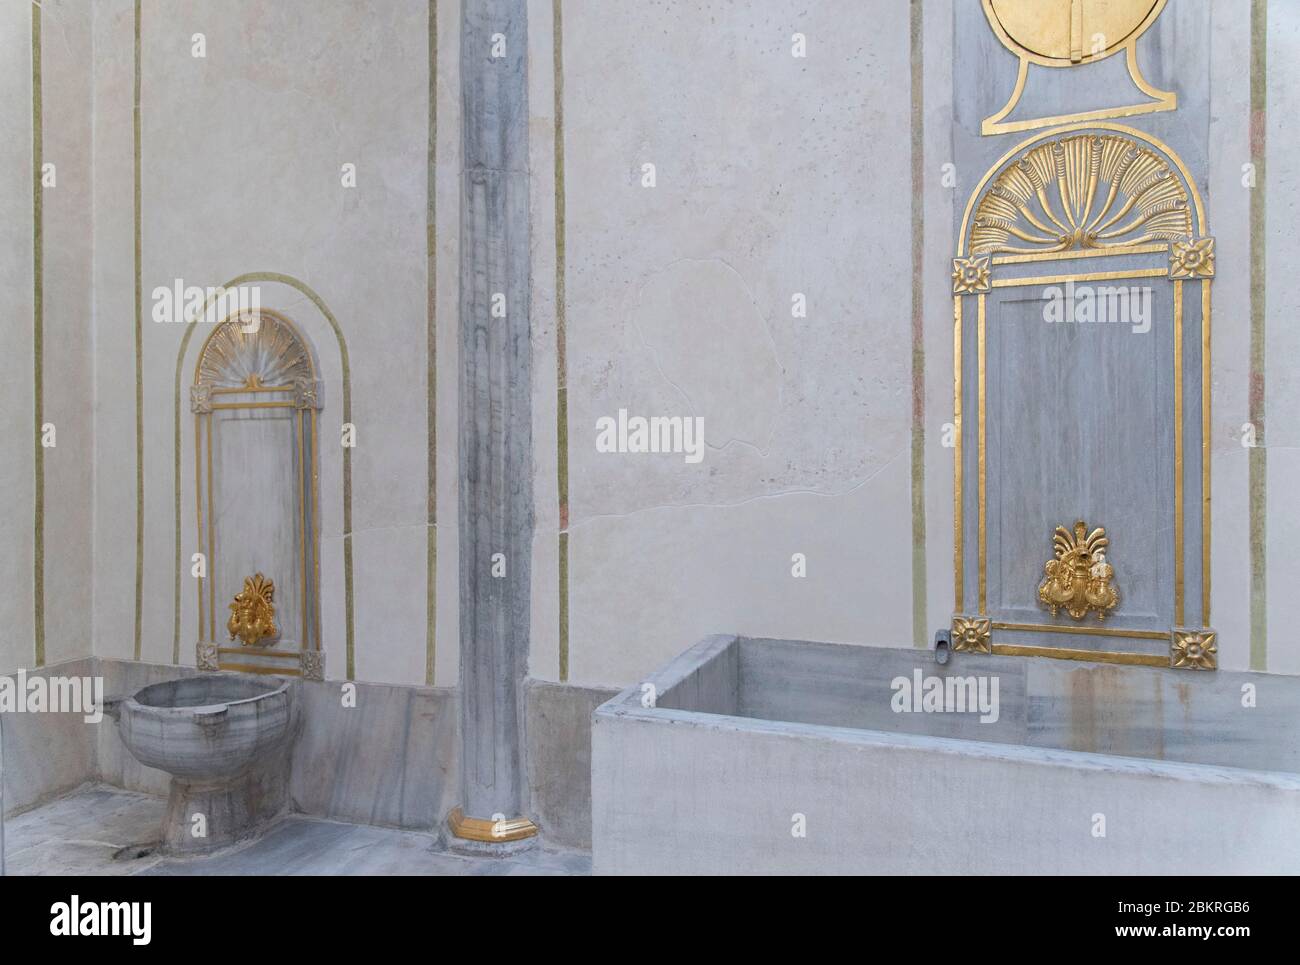 Turquie, Istanbul, Palais de Topkapi, le harem, dorures dans les salles de douche Banque D'Images